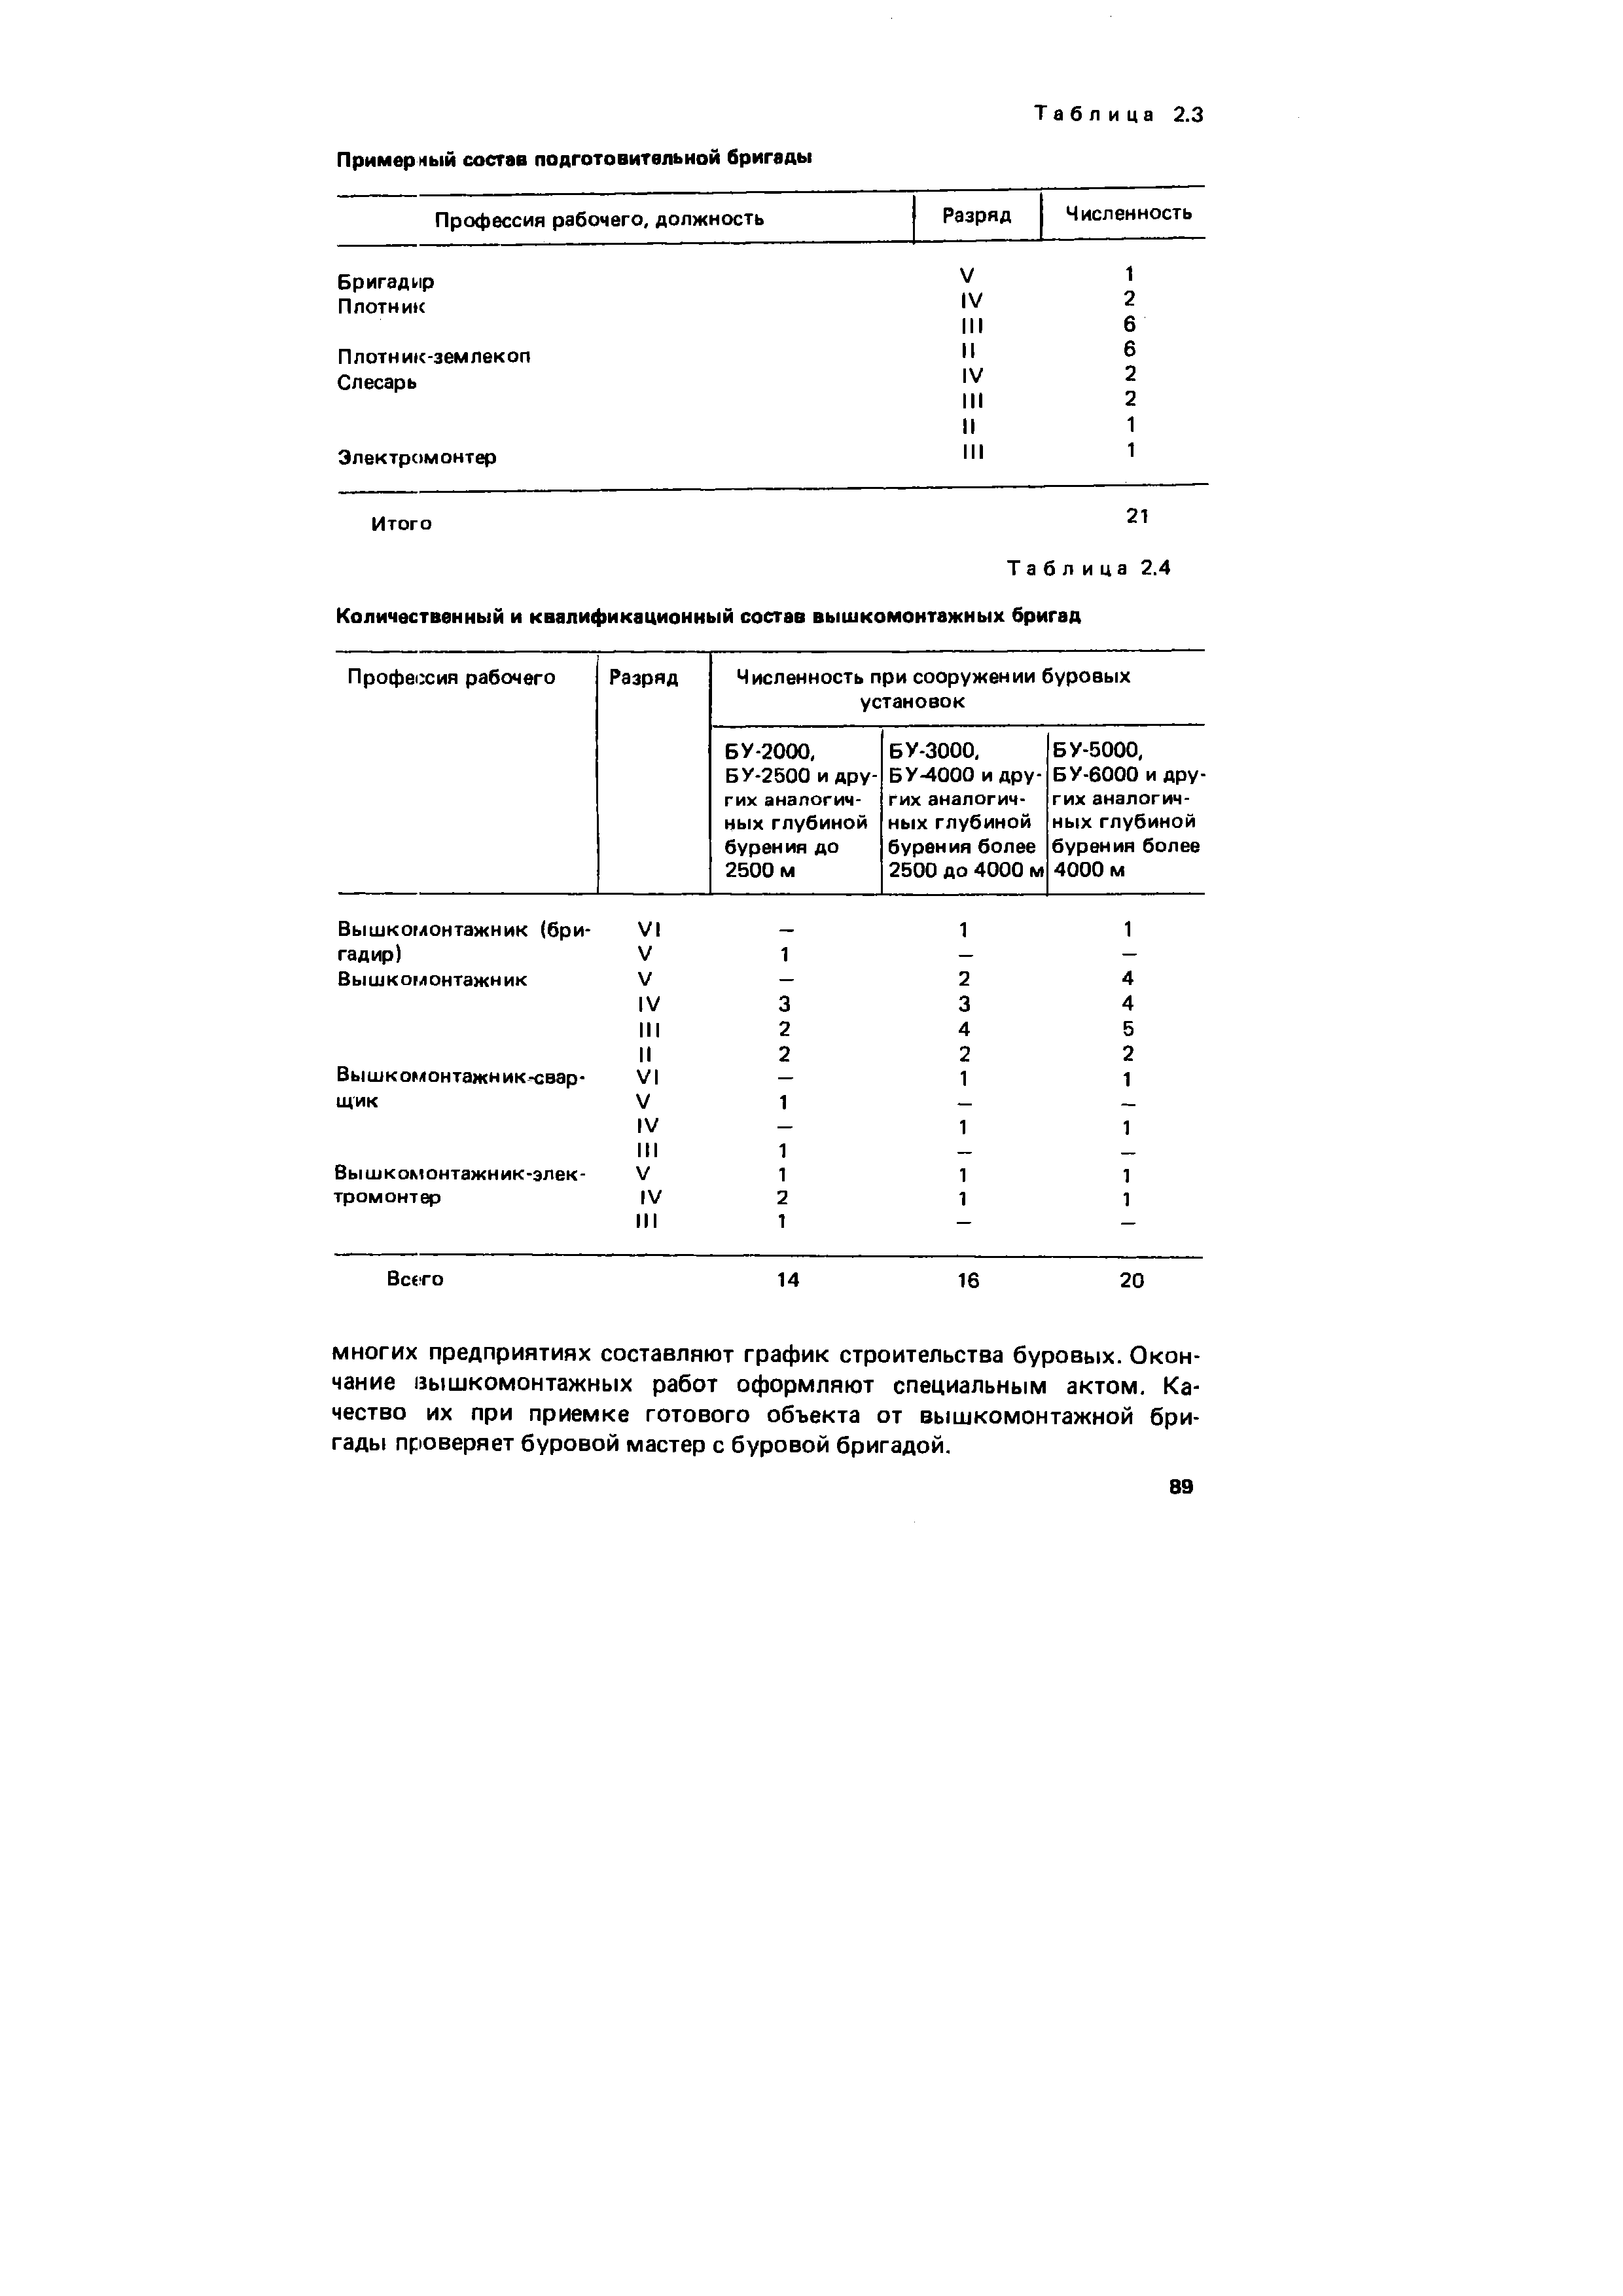 Таблица 2.4 Количественный и квалификационный состав вышкомонтажных бригад
